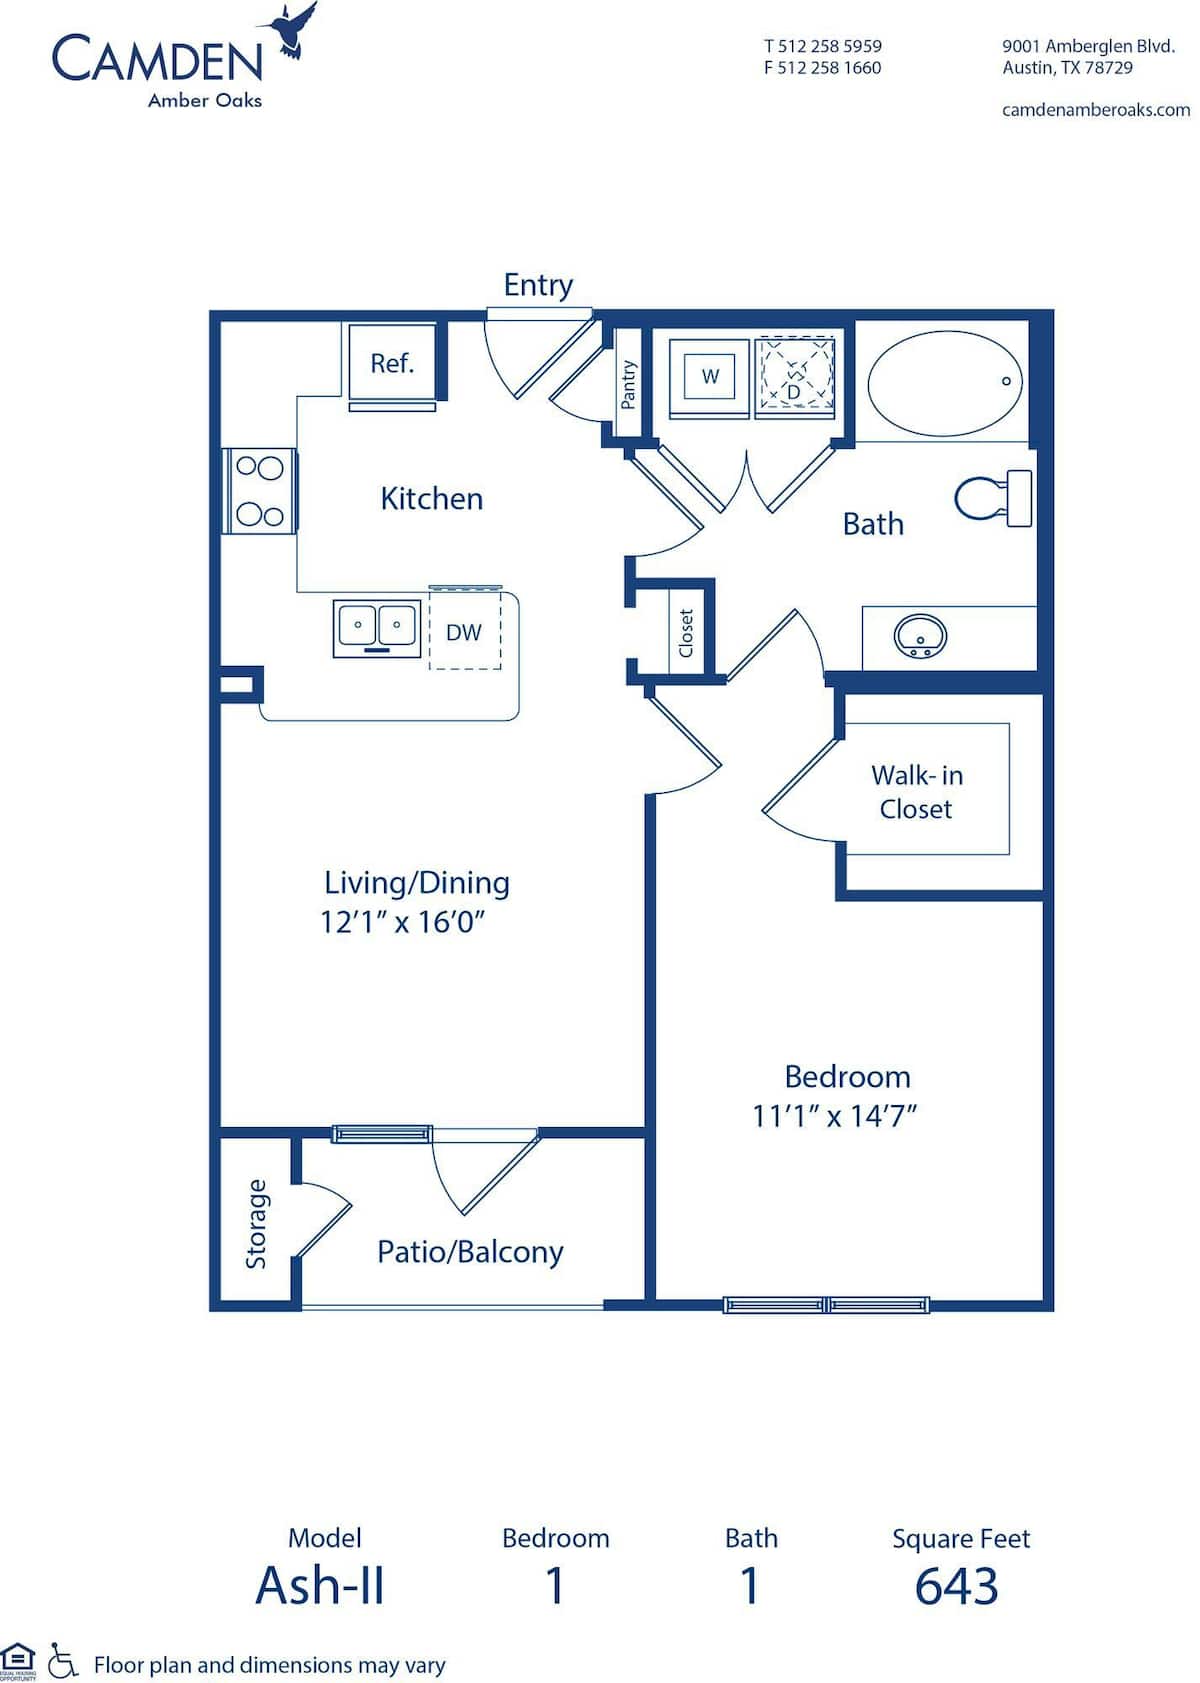 Floorplan diagram for Ash - II, showing 1 bedroom